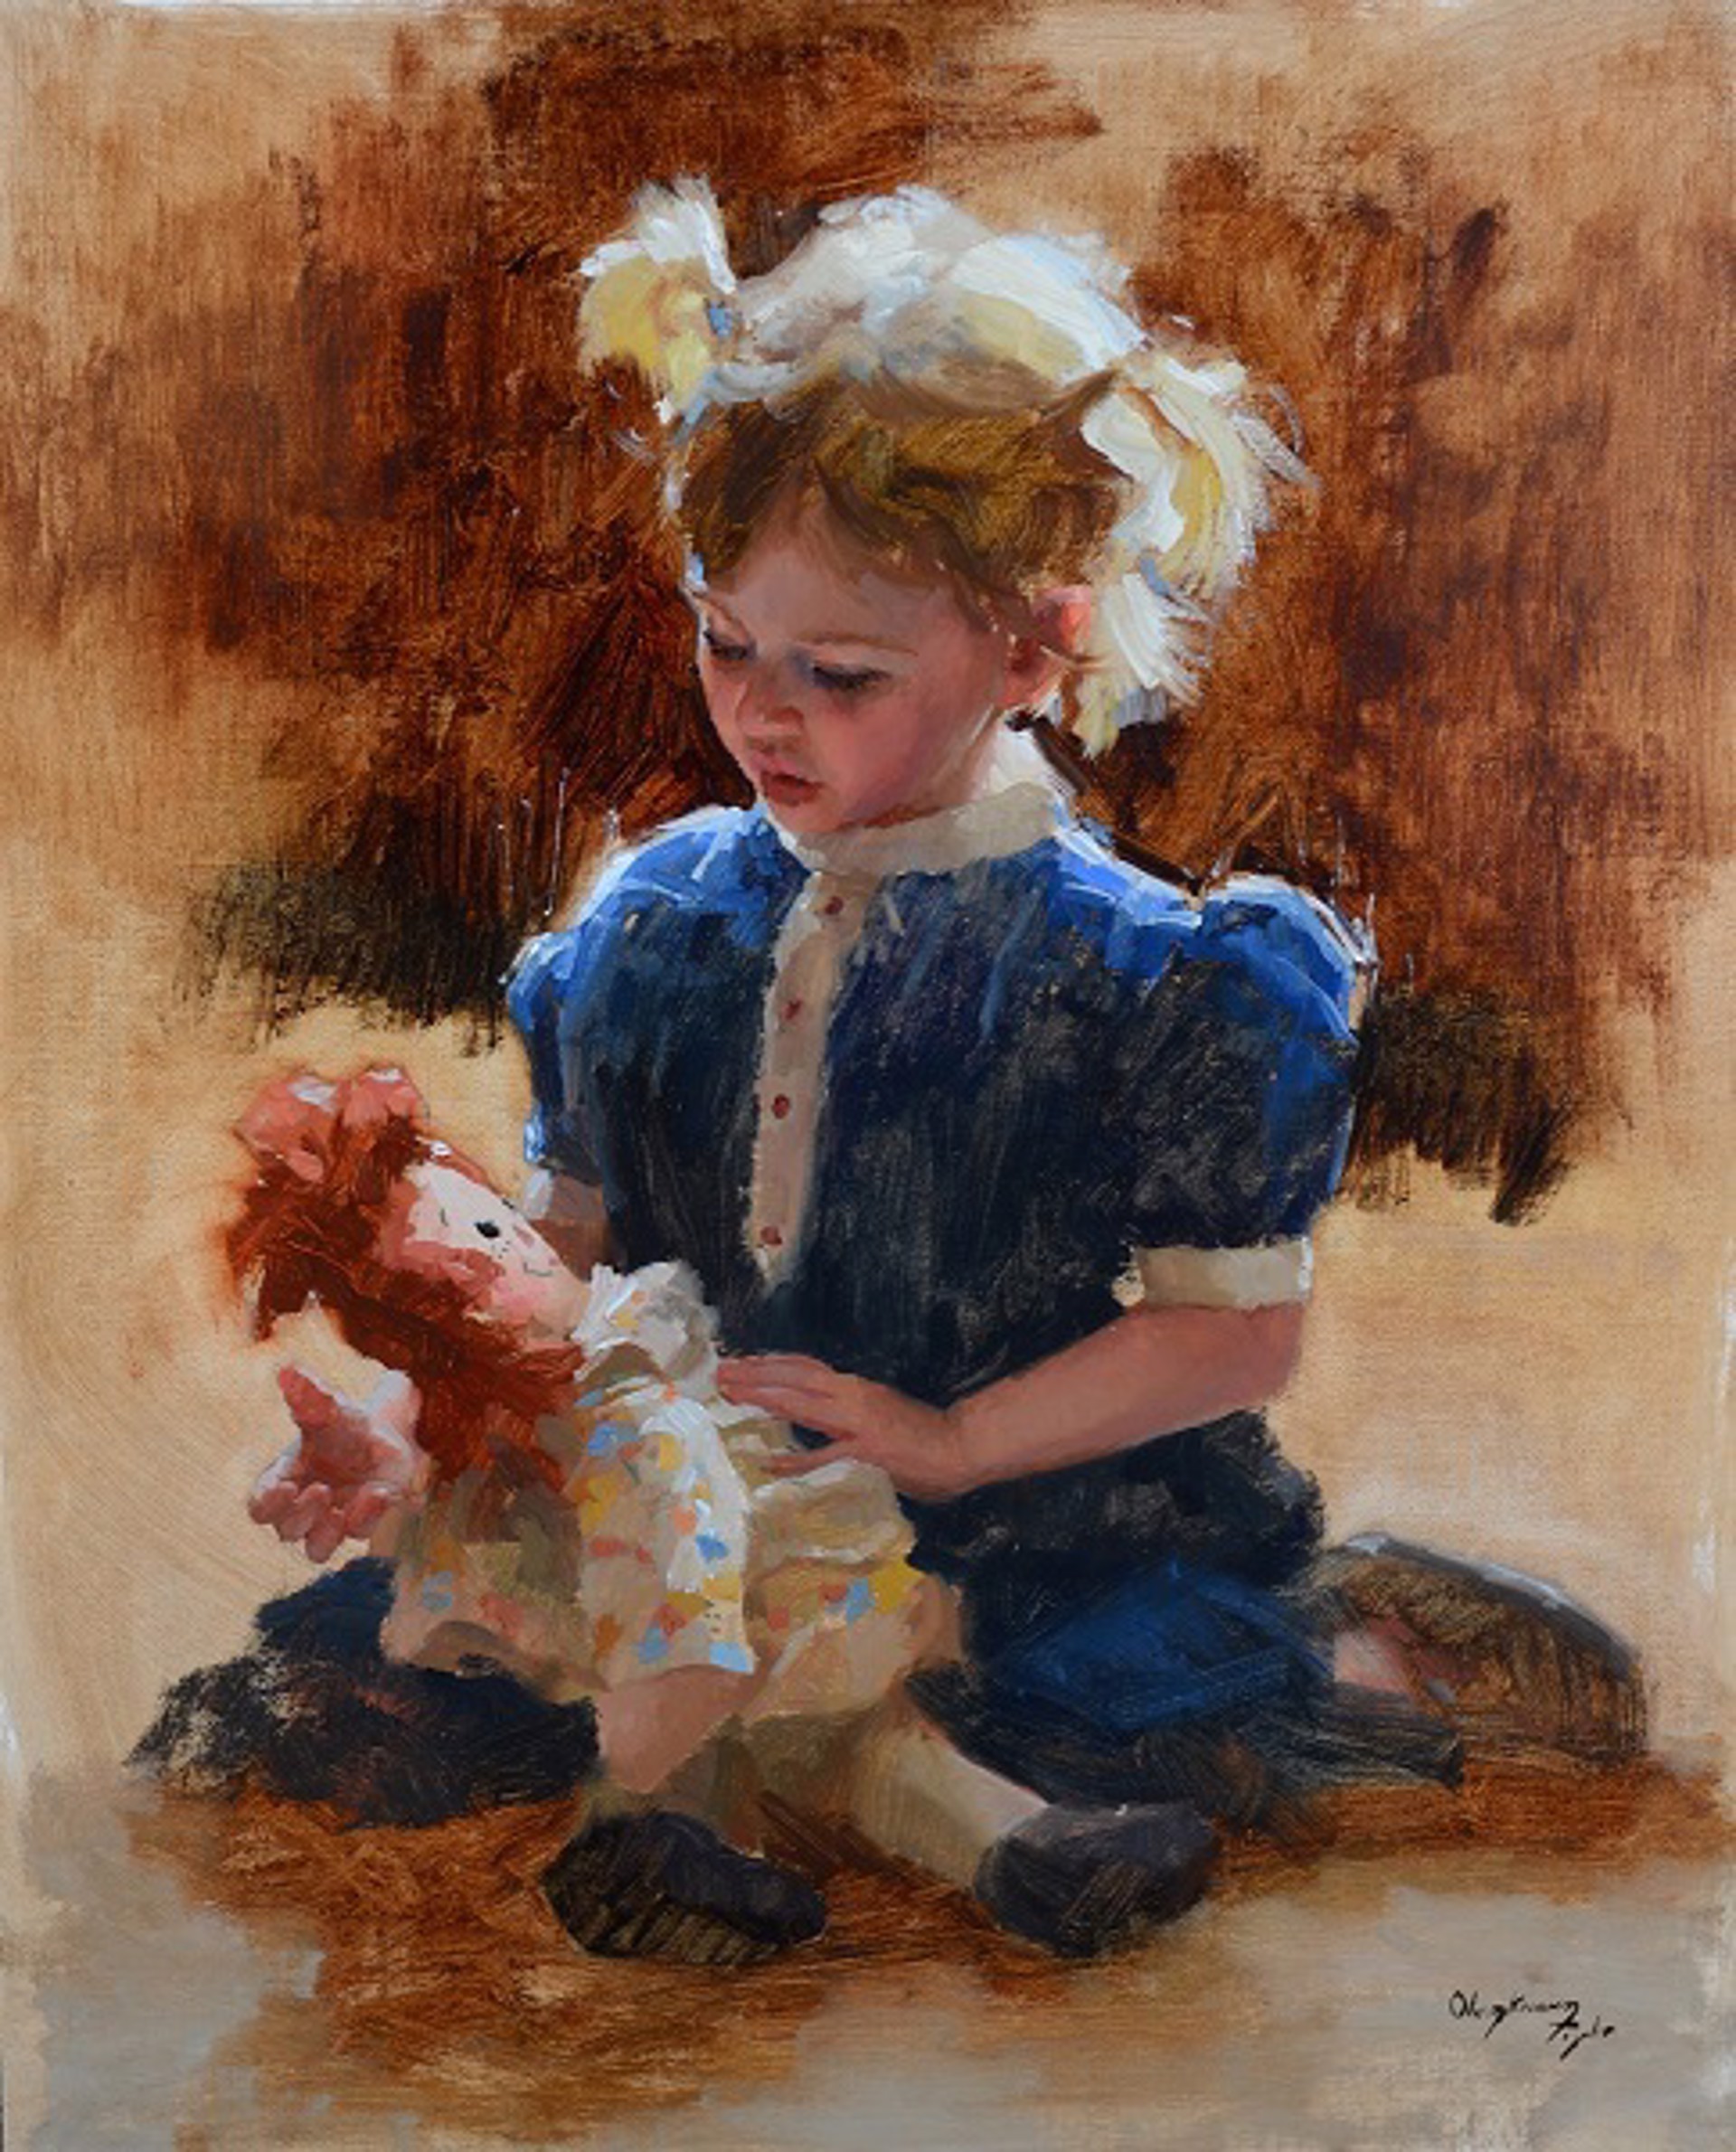 Baby Doll by Marci Oleszkiewicz